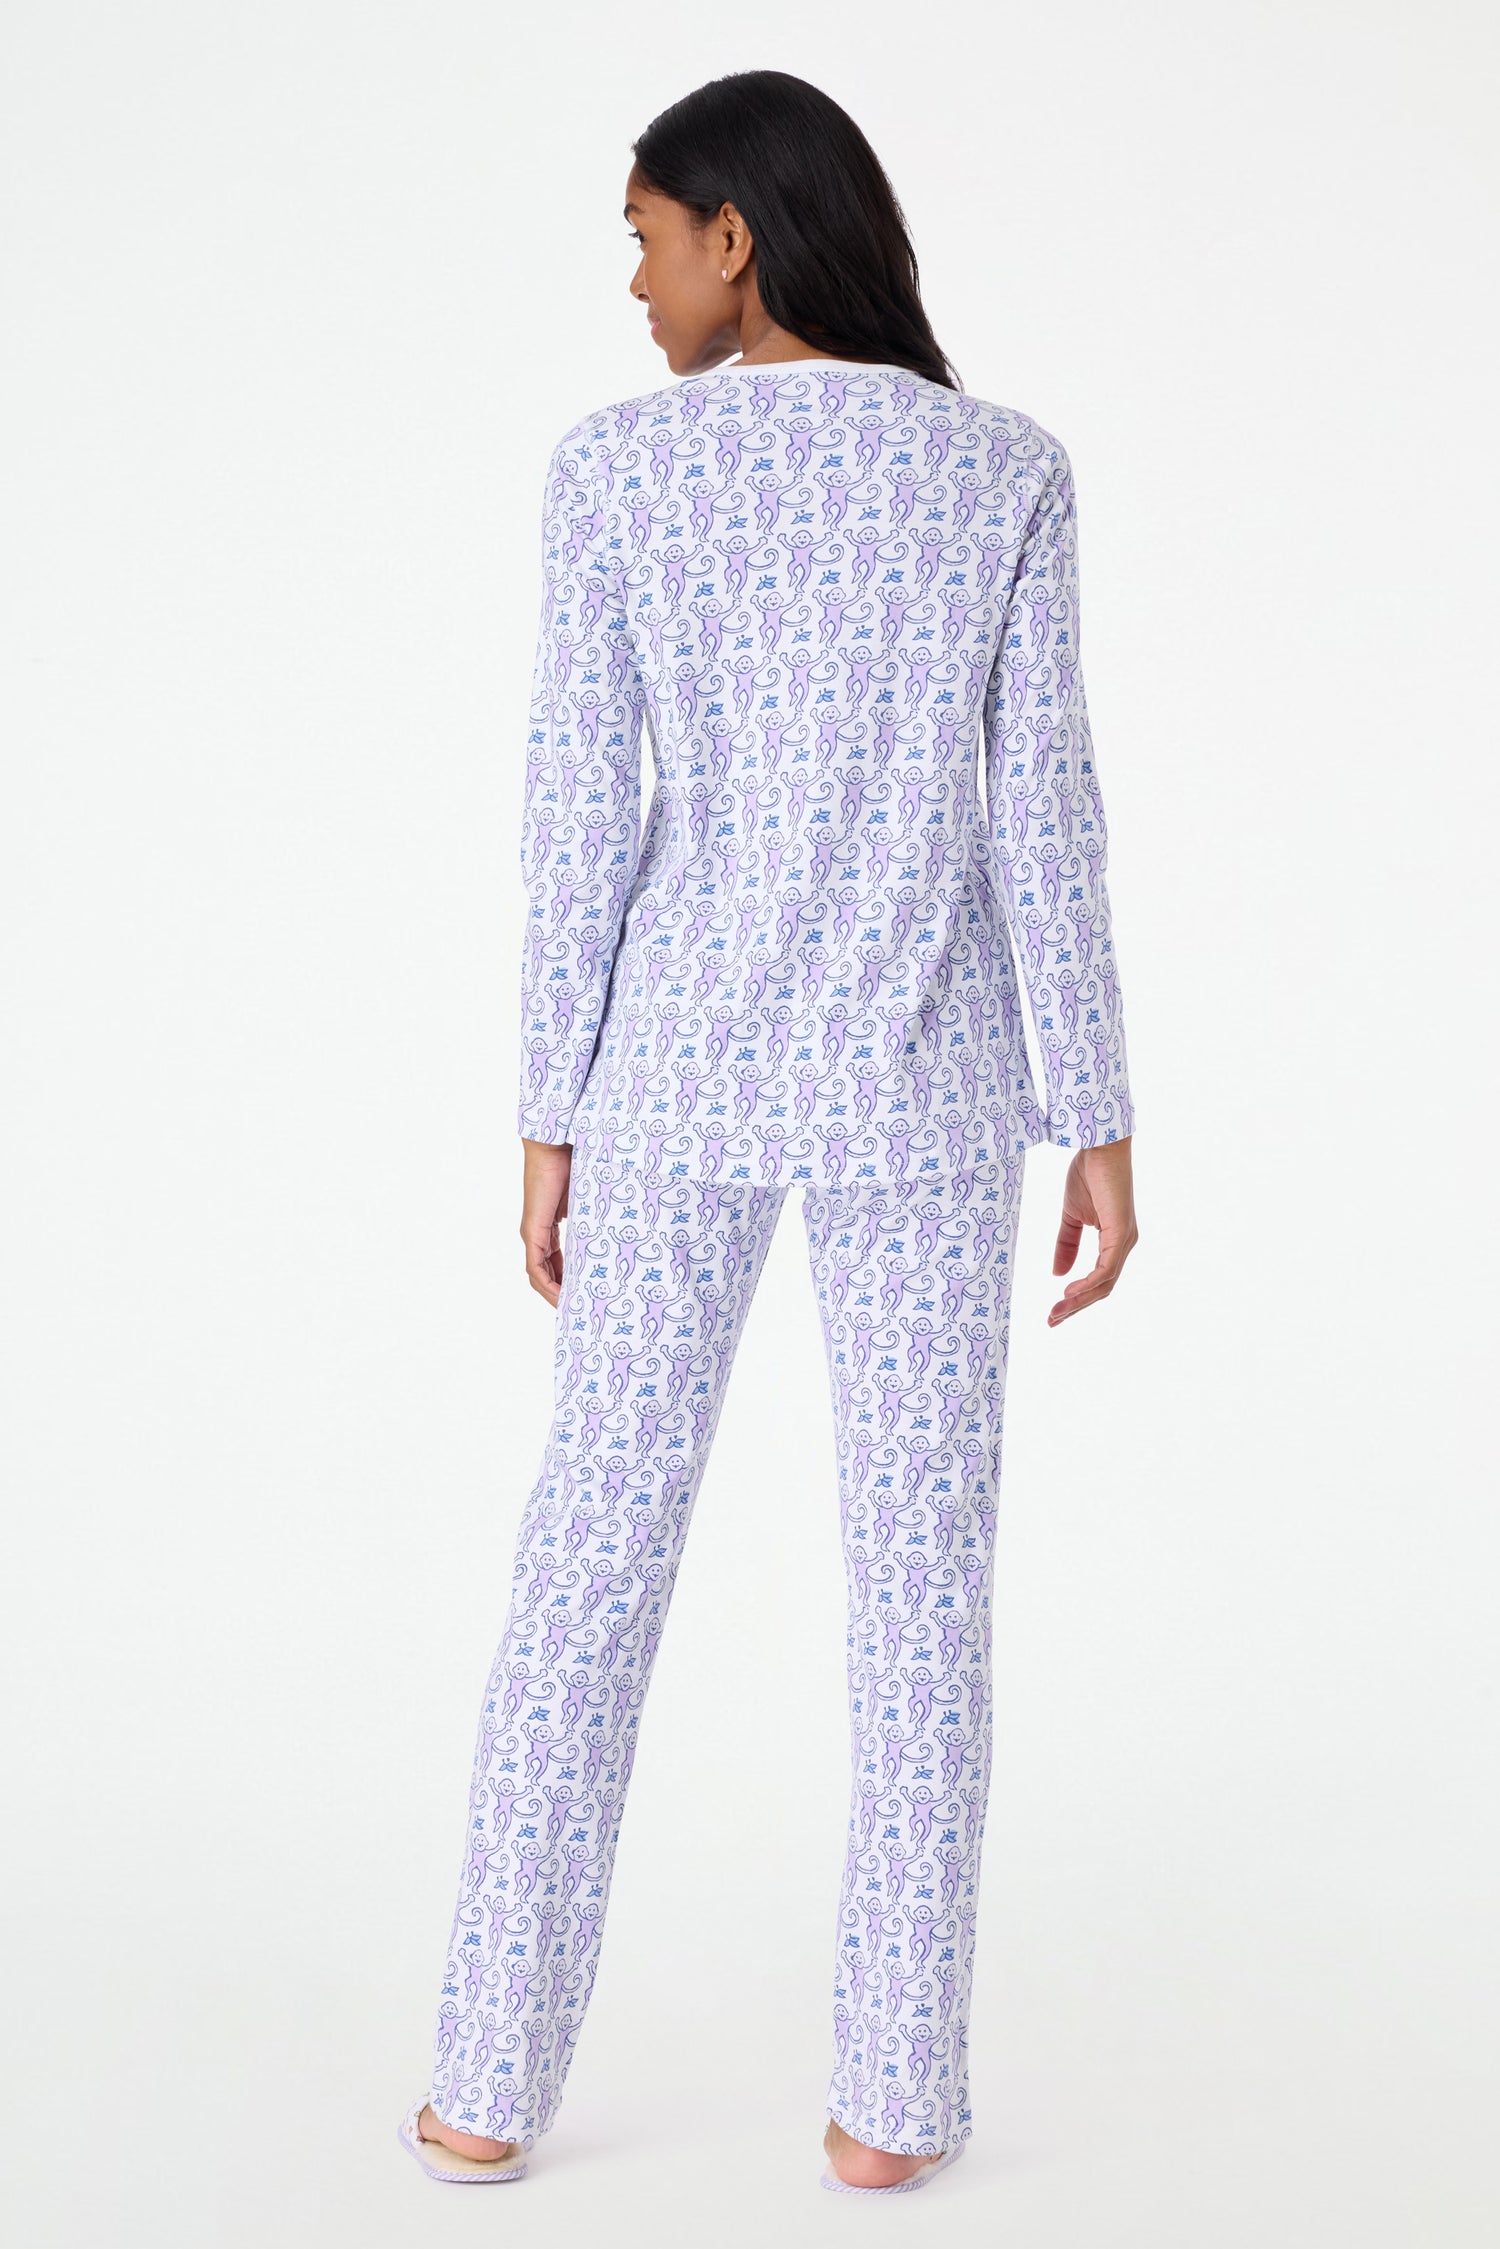 Roller Rabbit Lavender Monkey Pajamas